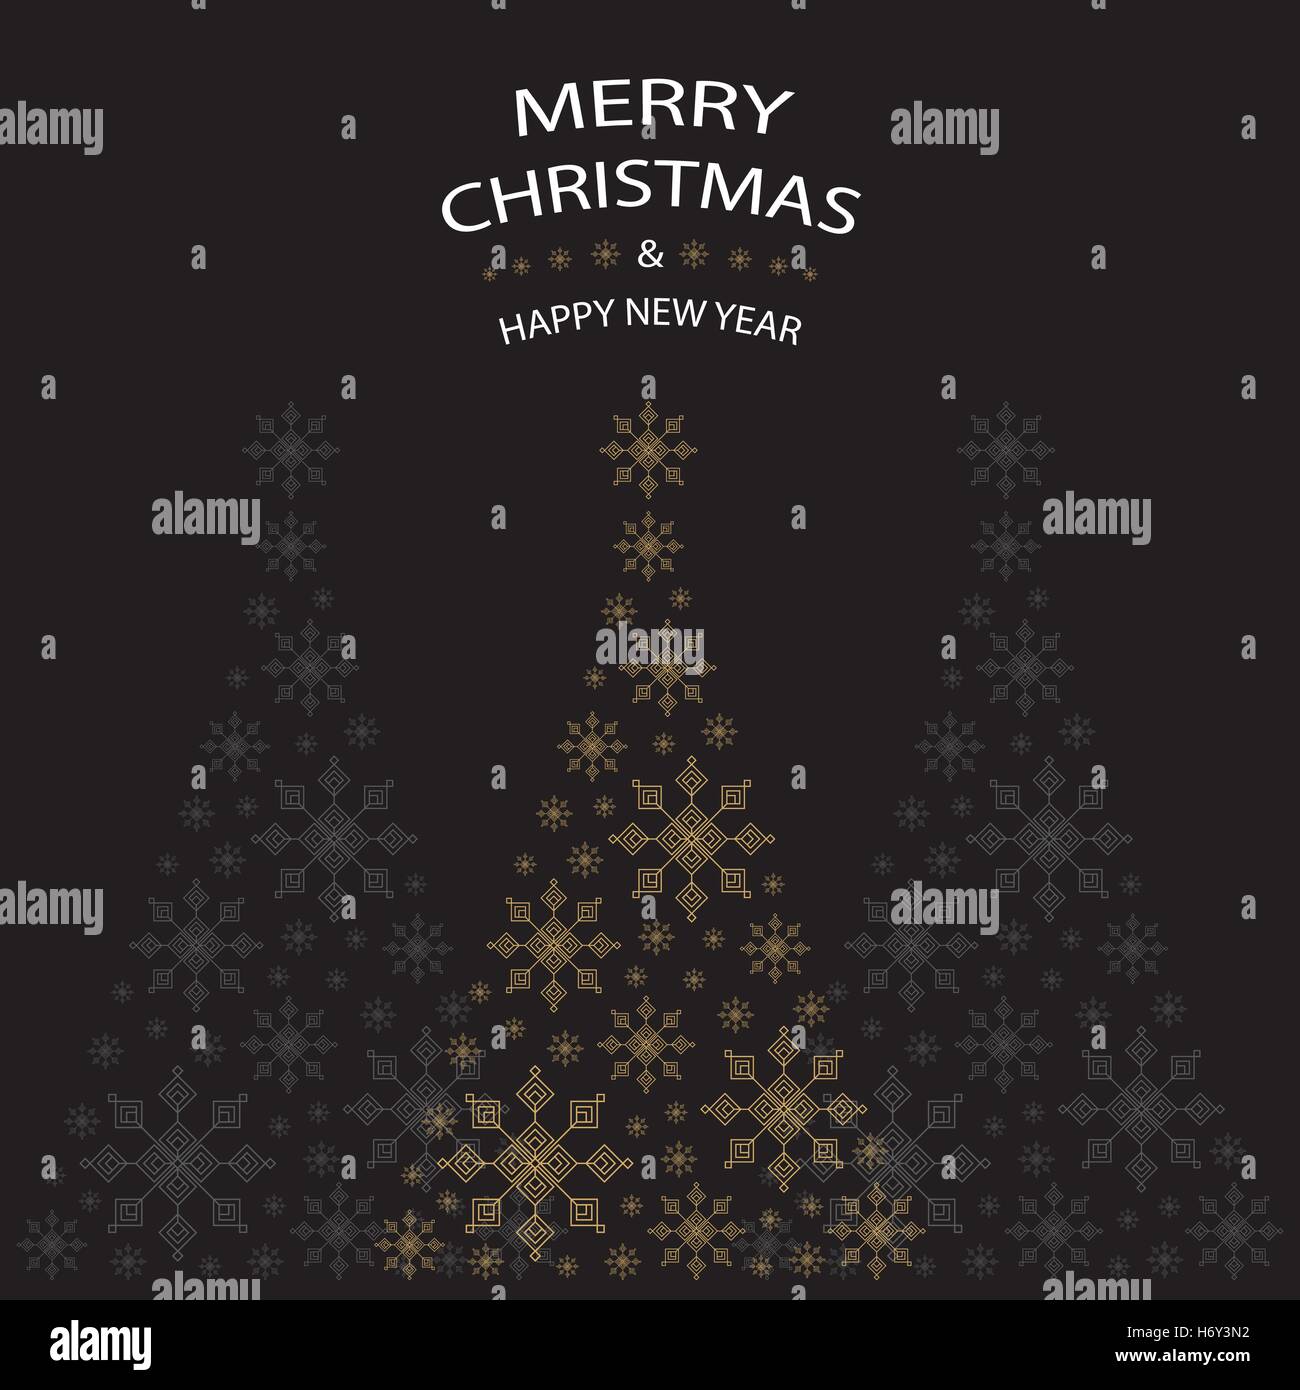 Weihnachtsbaum Geformt Aus Gold Schneeflocken Auf Schwarzen Hintergrund Mit Weisser Schrift Grafik Frohe Weihnachten Und Happy New Year Stock Vektorgrafik Alamy